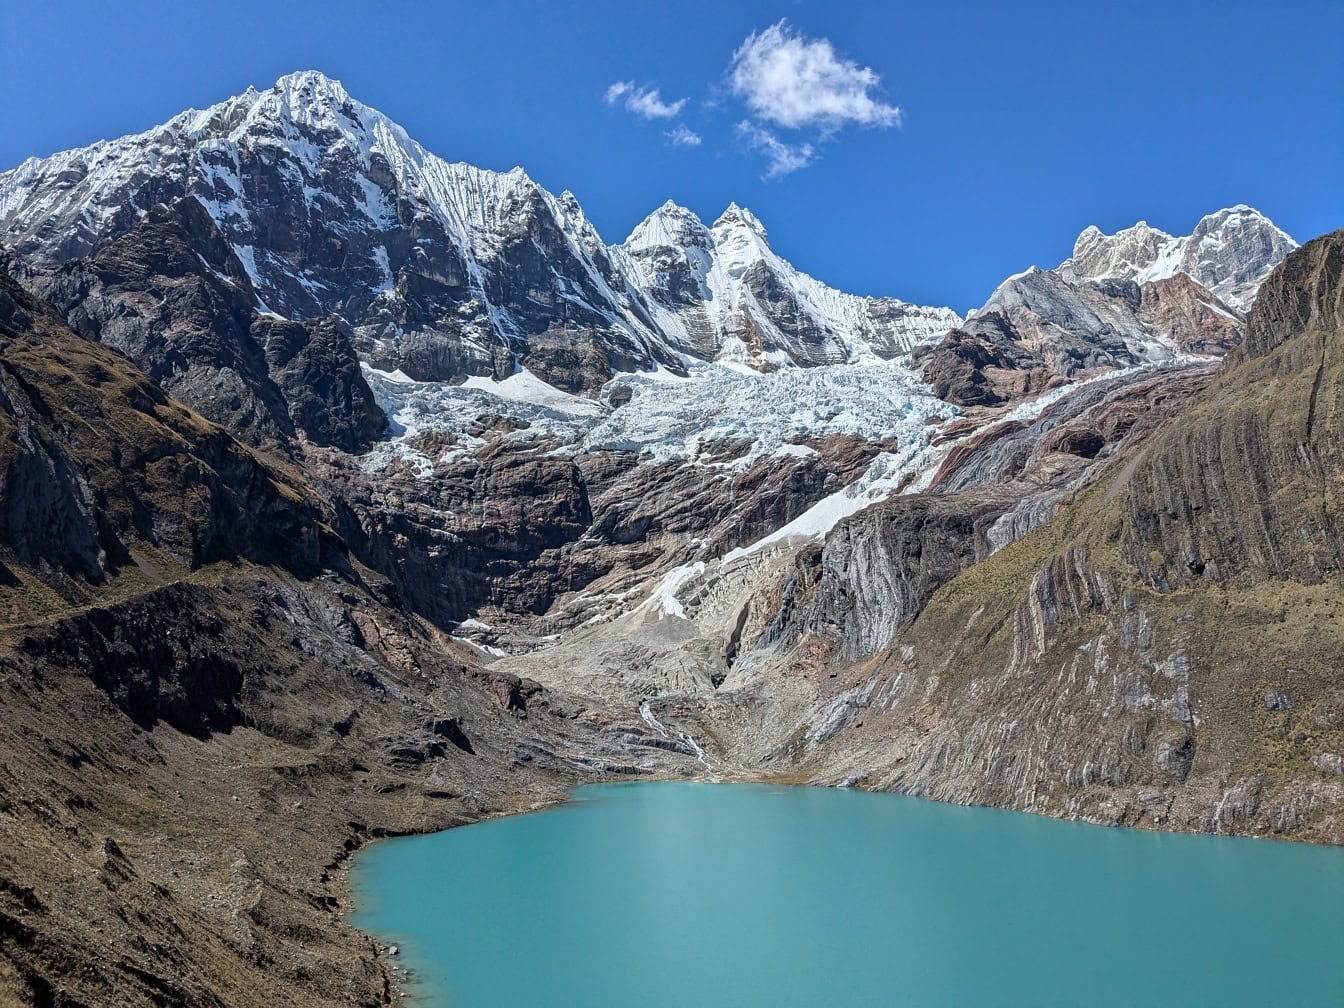 Hồ được bao quanh bởi những ngọn núi tại dãy núi Cordillera Huayhuash ở Andes của Peru ở các vùng Ancash, Lima và Huánuco